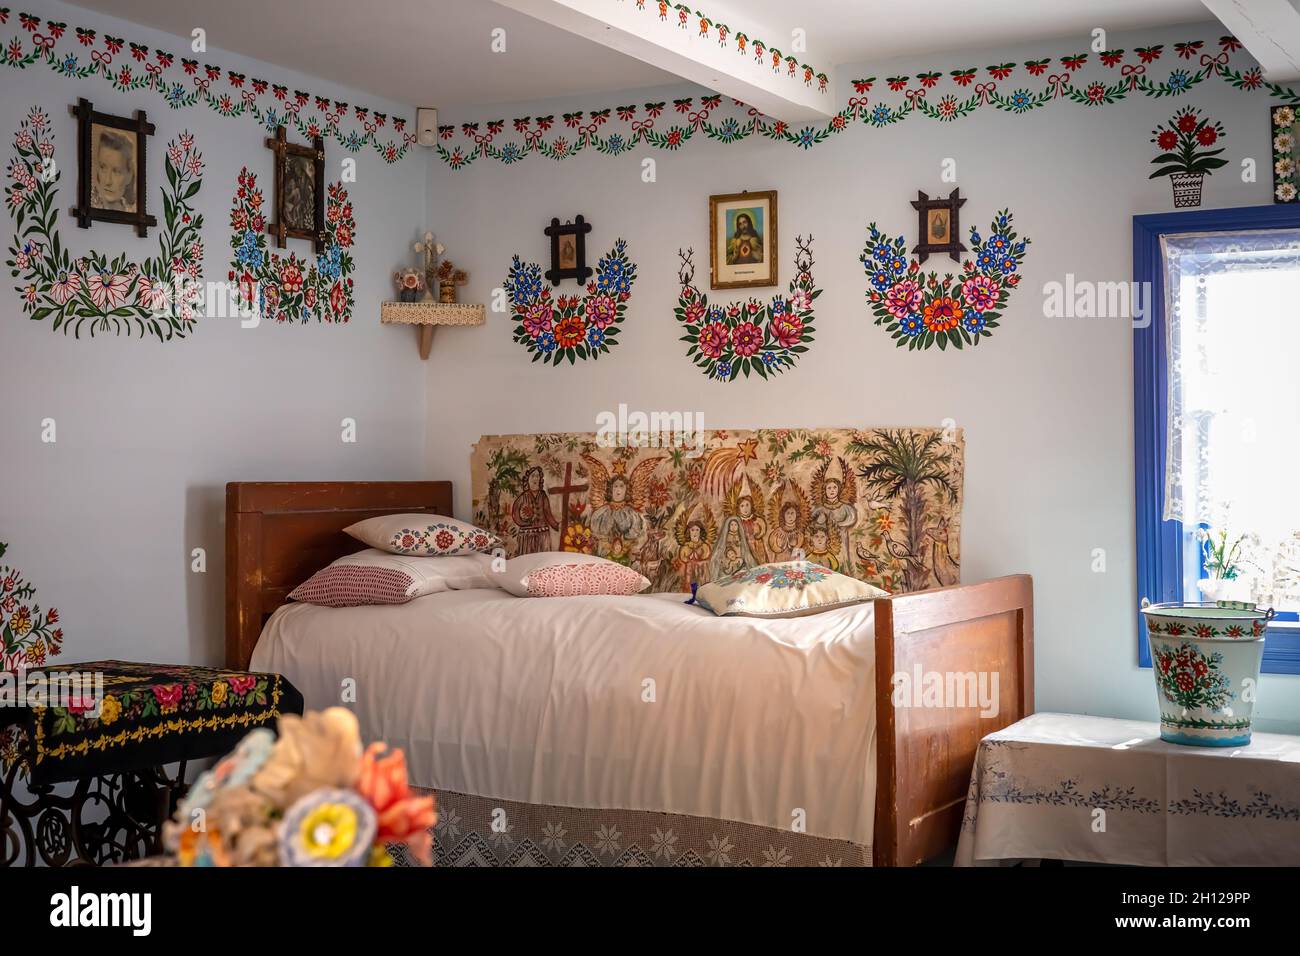 Zalipie, Pologne - 1er août 2021 : intérieur d'un chalet traditionnel en bois.Mobilier vintage, motifs floraux sur le mur. Banque D'Images